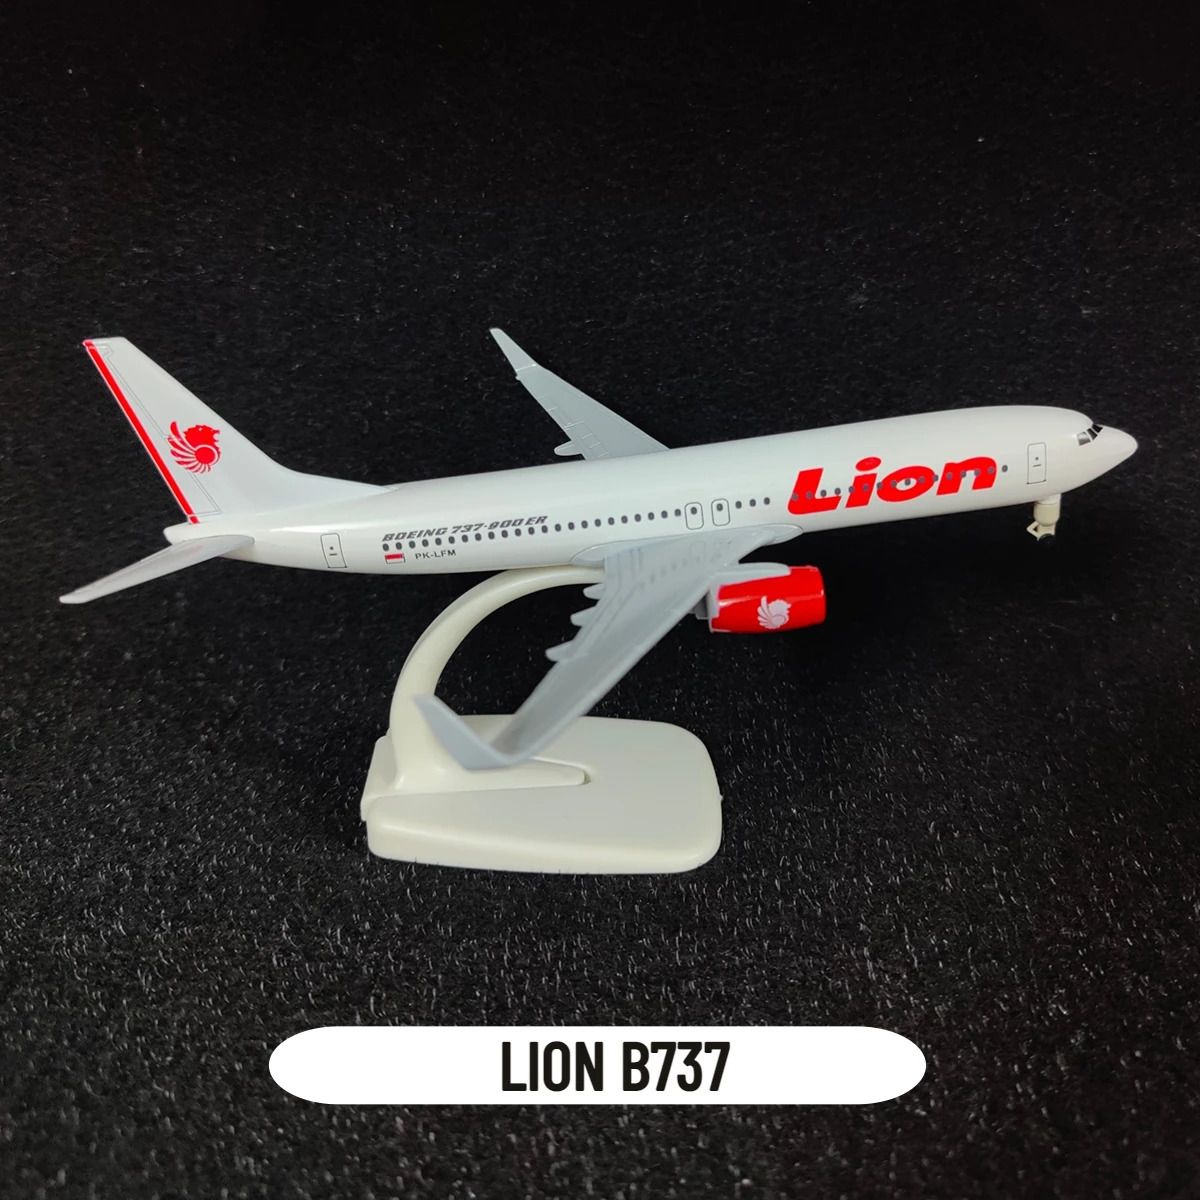 Lion B737